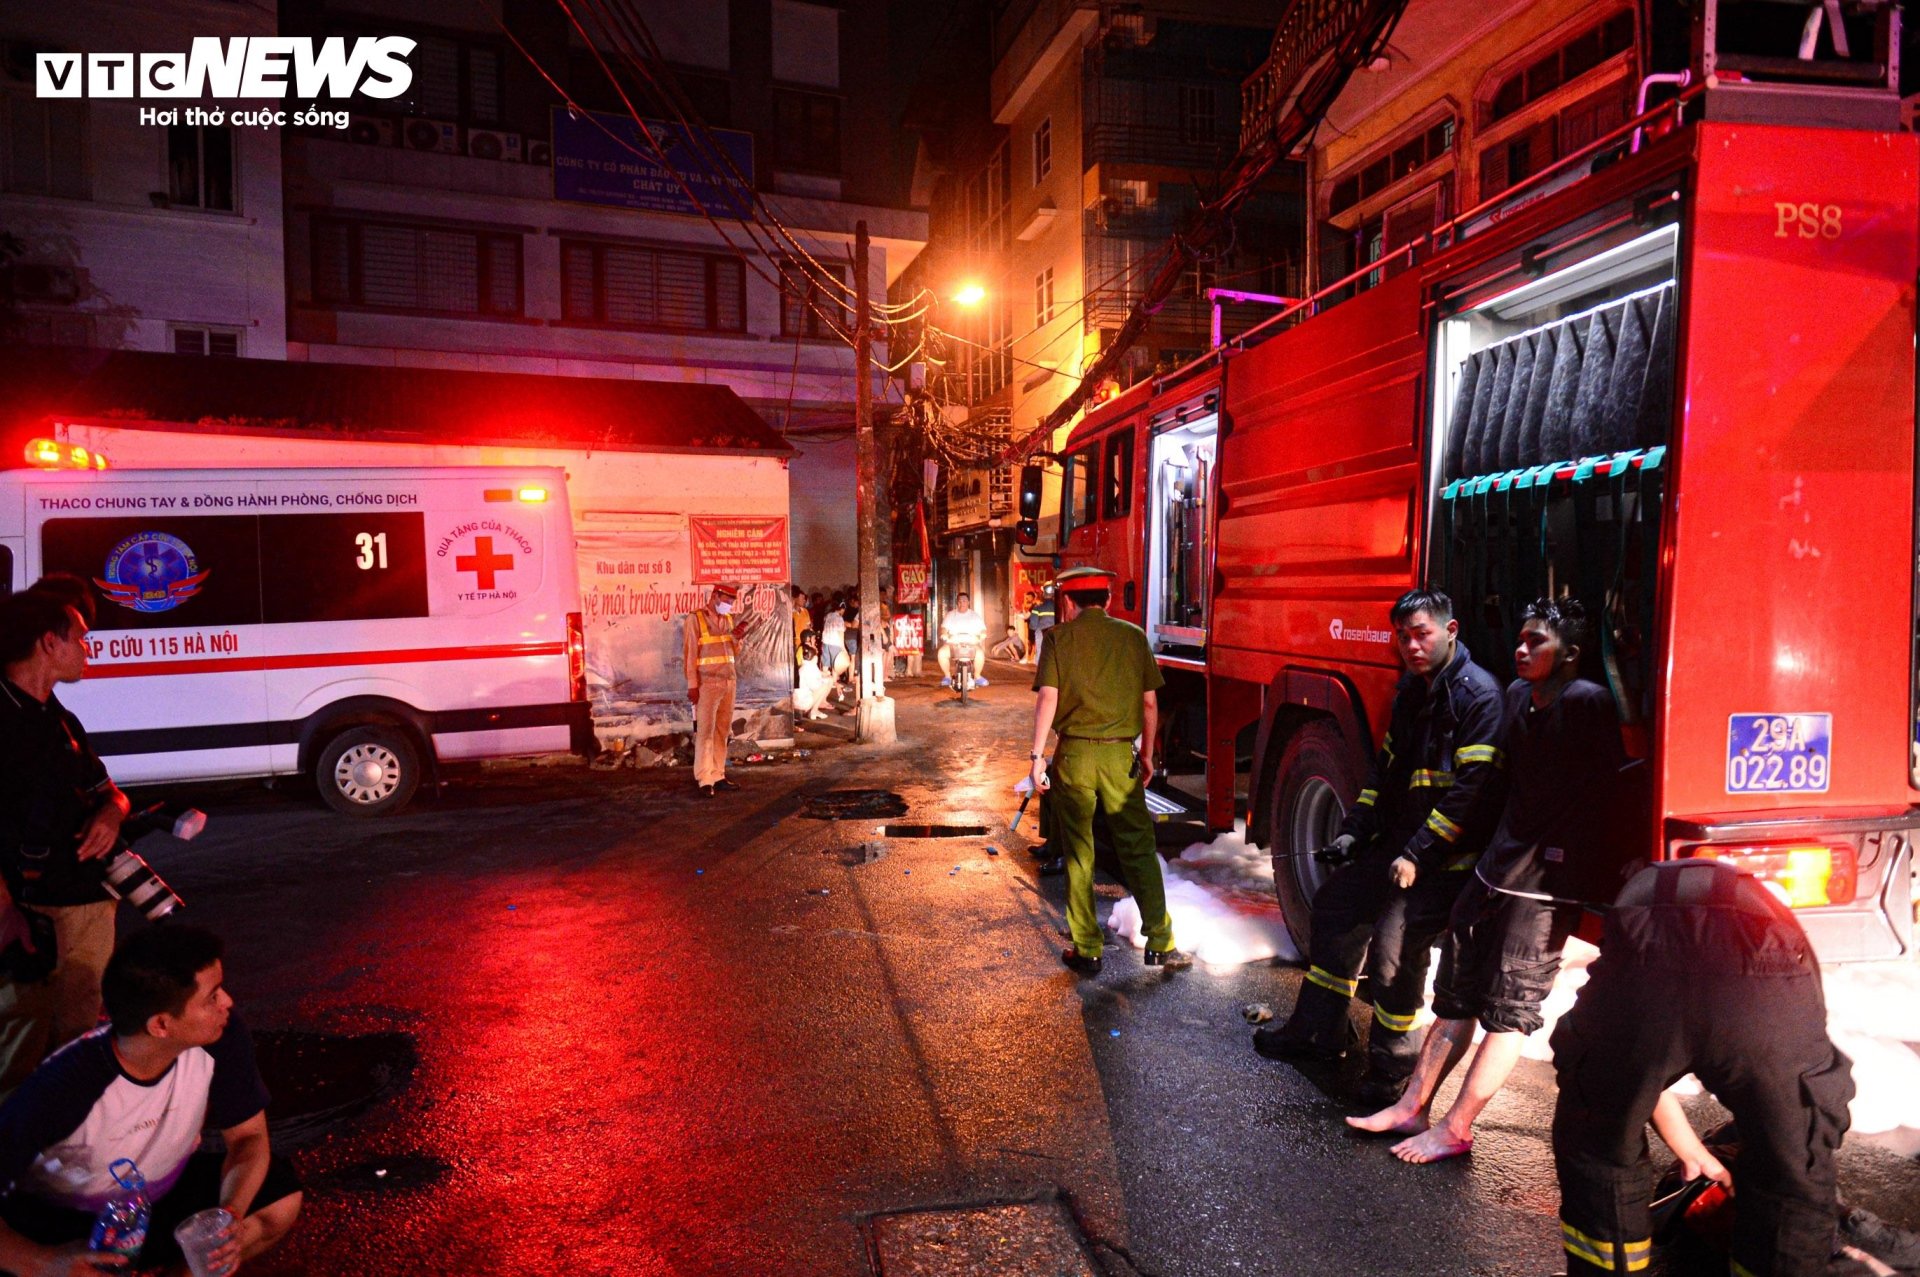 Hiện trường vụ cháy chung cư mini ở Hà Nội trong đêm, nhiều người ngất xỉu - Ảnh 13.